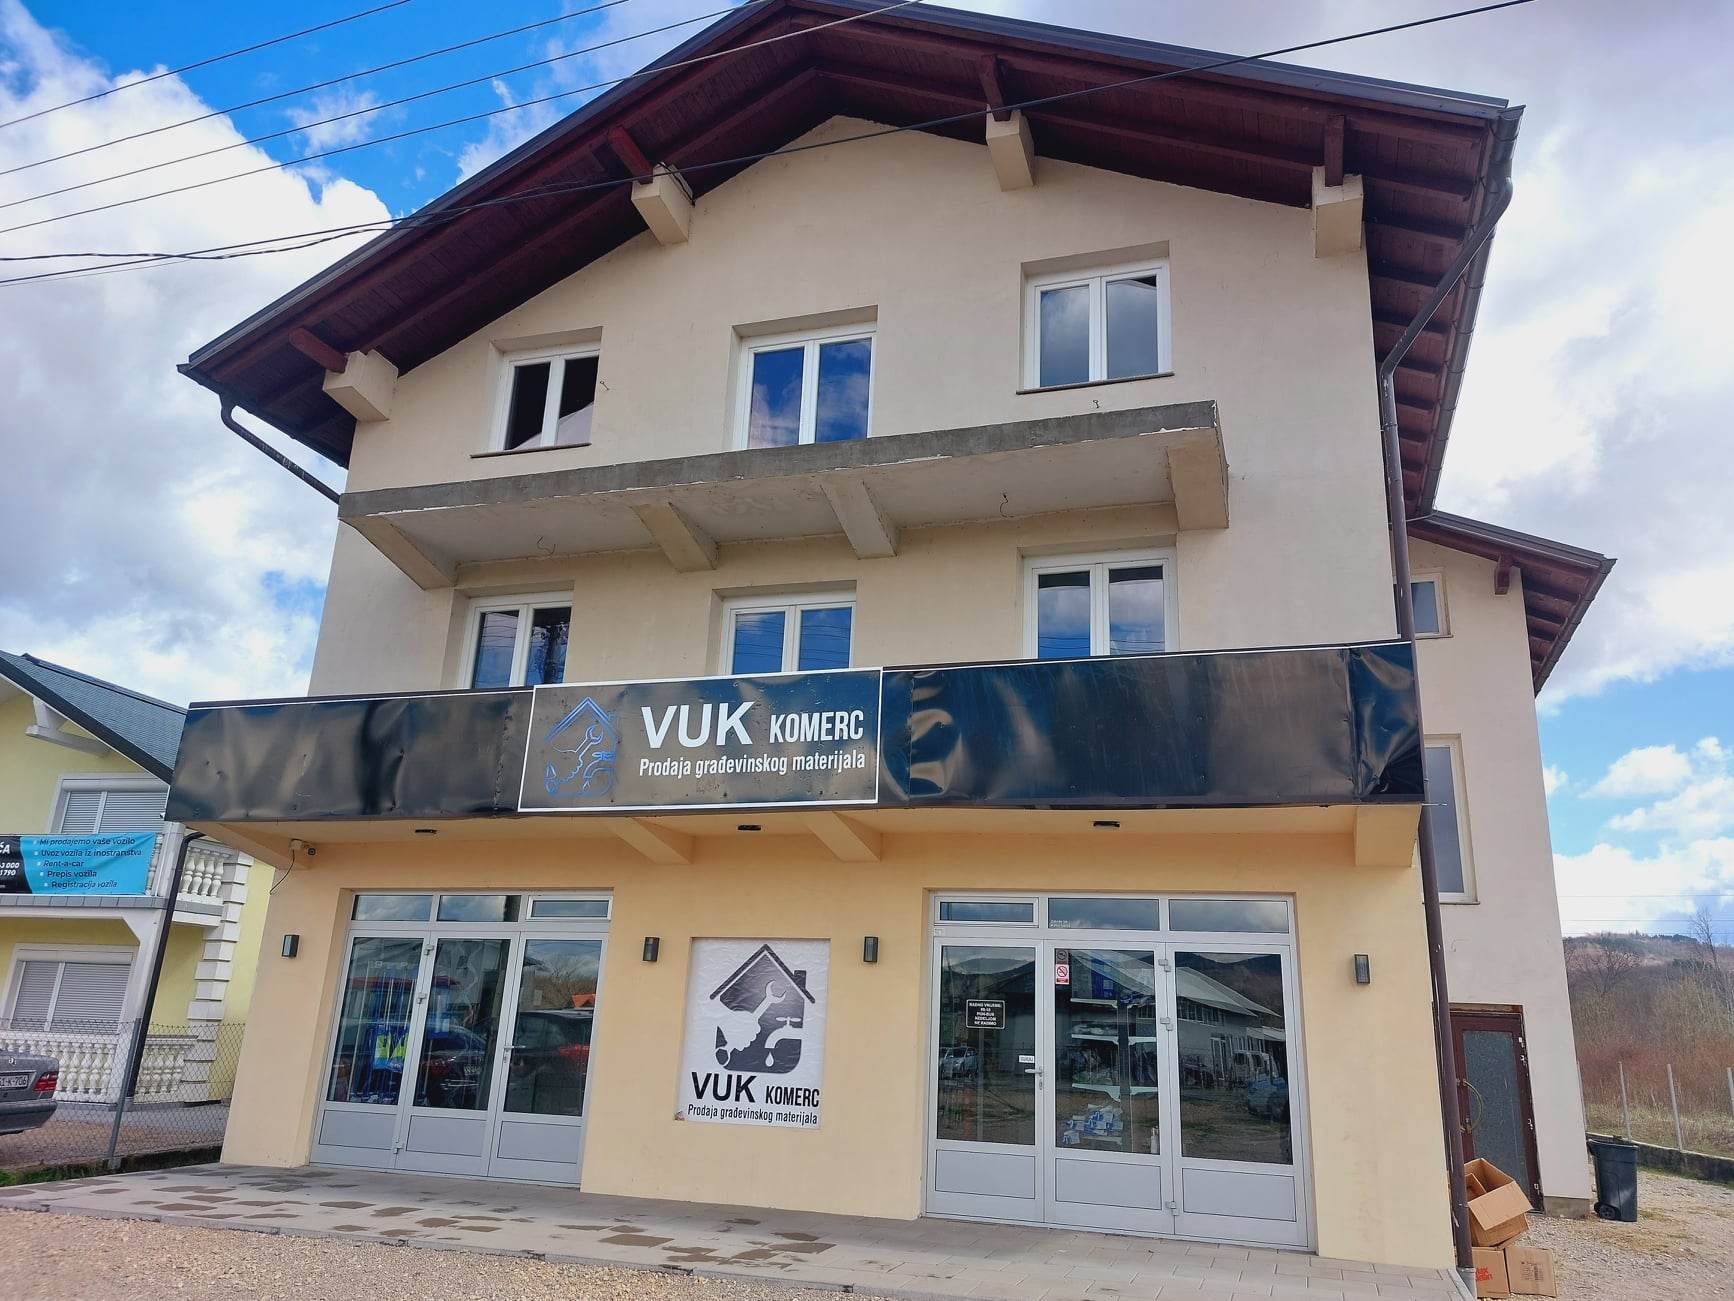 Novo u Kotor Varošu : “VUK komerc” – prodaja građevinskog materijala